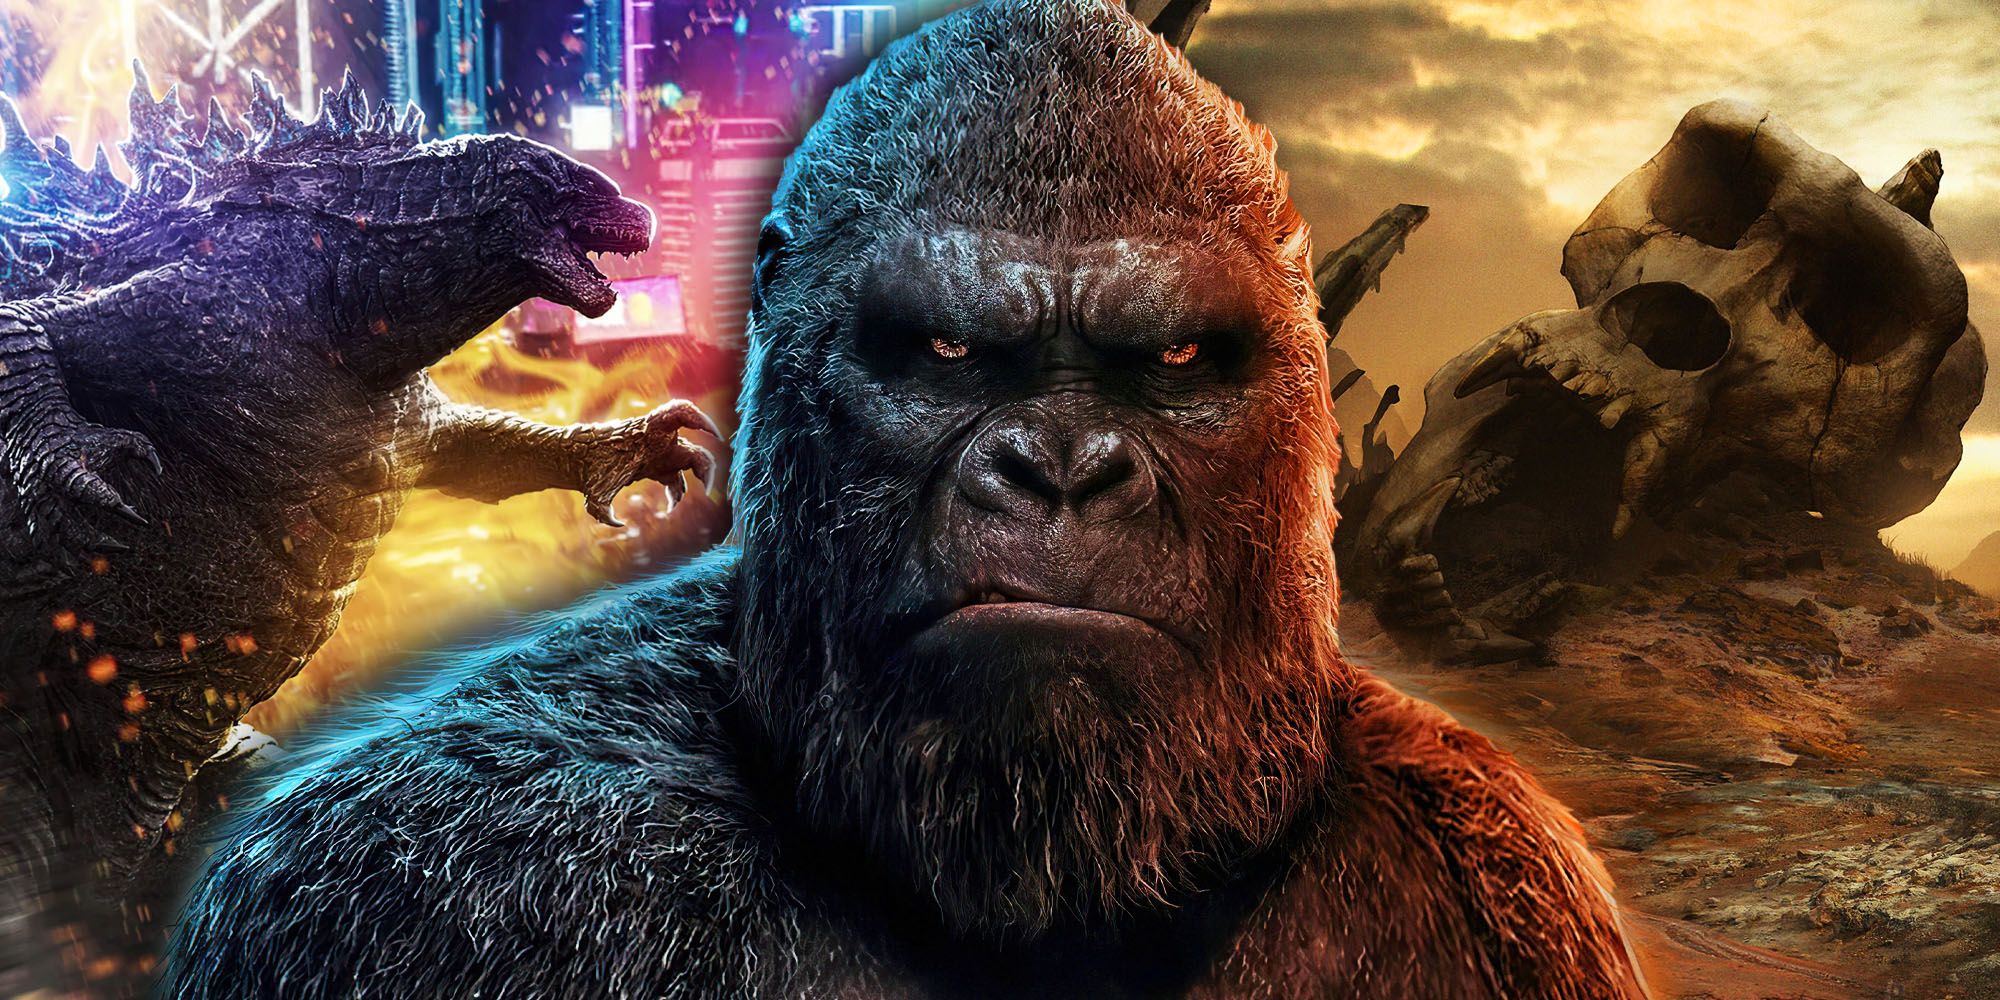 “Semuanya Layak”: Dead Kong: Karakter Pulau Tengkorak Kembali Dalam Video Acara TV Godzilla yang Misterius